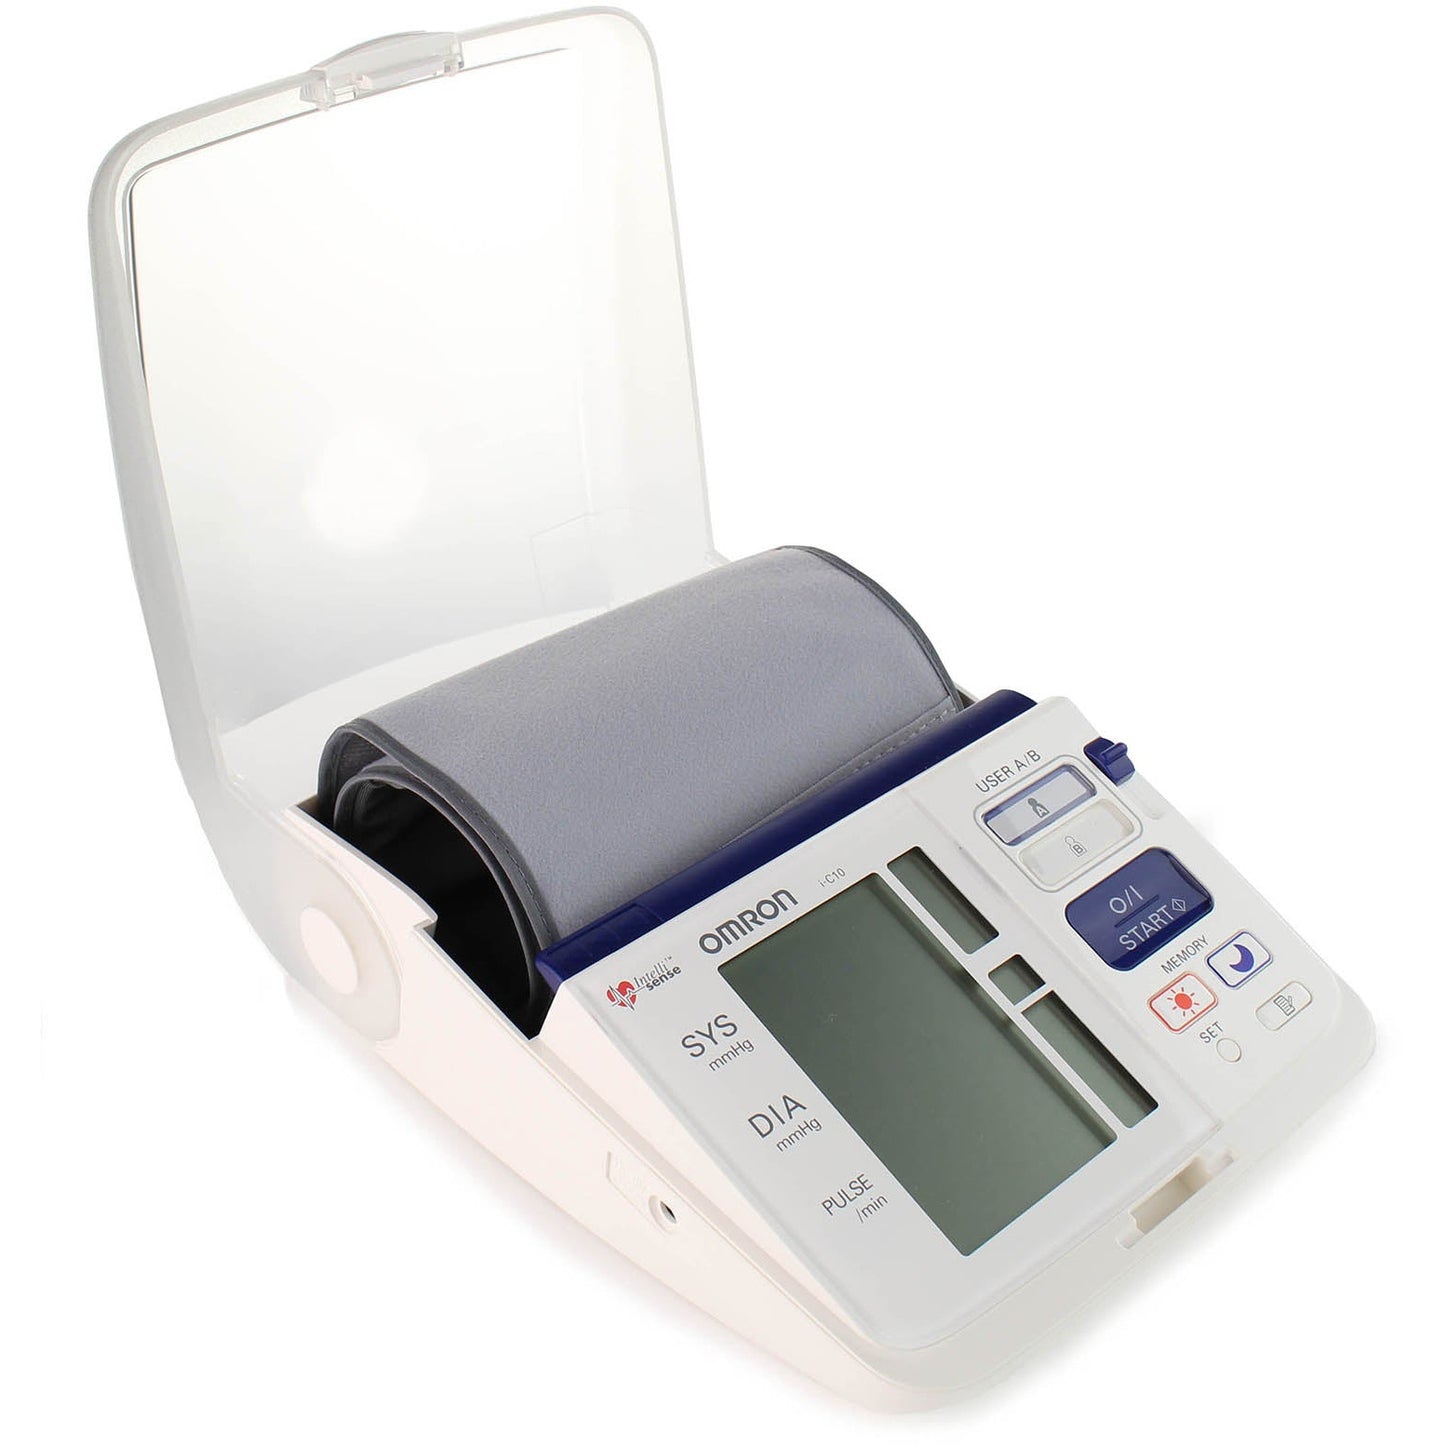 Omron i-C10 Blood Pressure Monitor